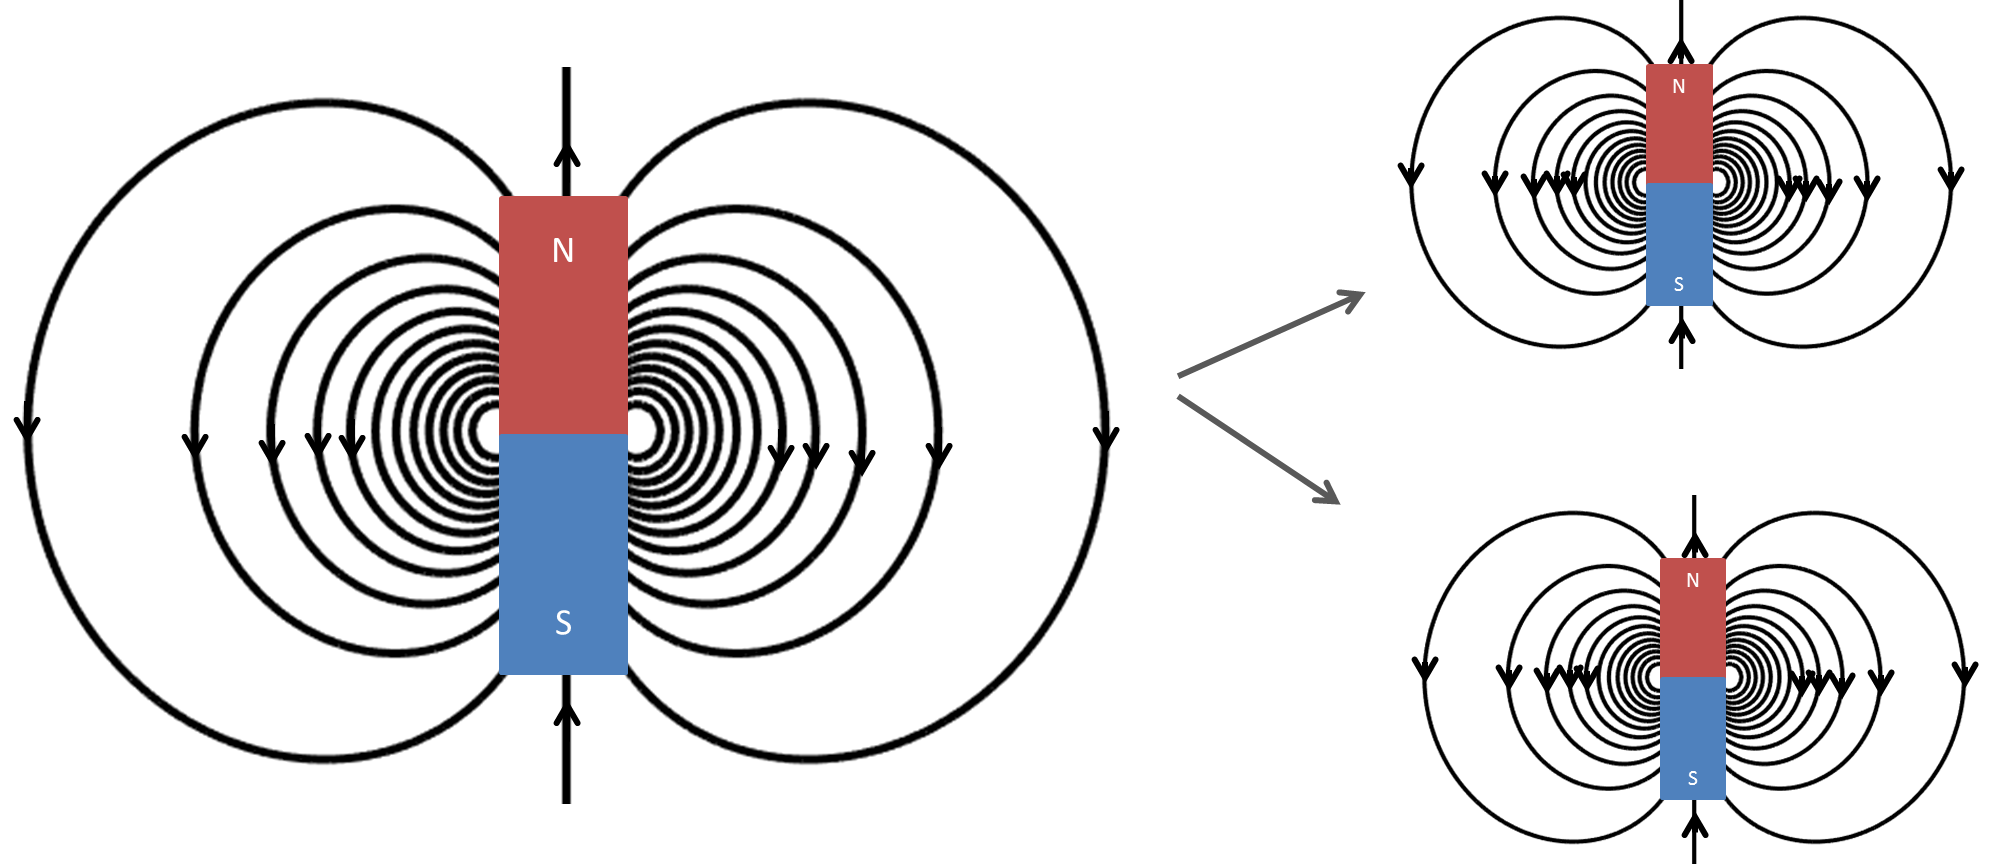 Картинки магнитных линий магнитного поля. Изображение магнитного поля полосового магнита. Вектора магнитной индукции магнитного поля магнита. Силовые линии магнитного поля постоянного магнита. Магнитные линии полосового магнита.